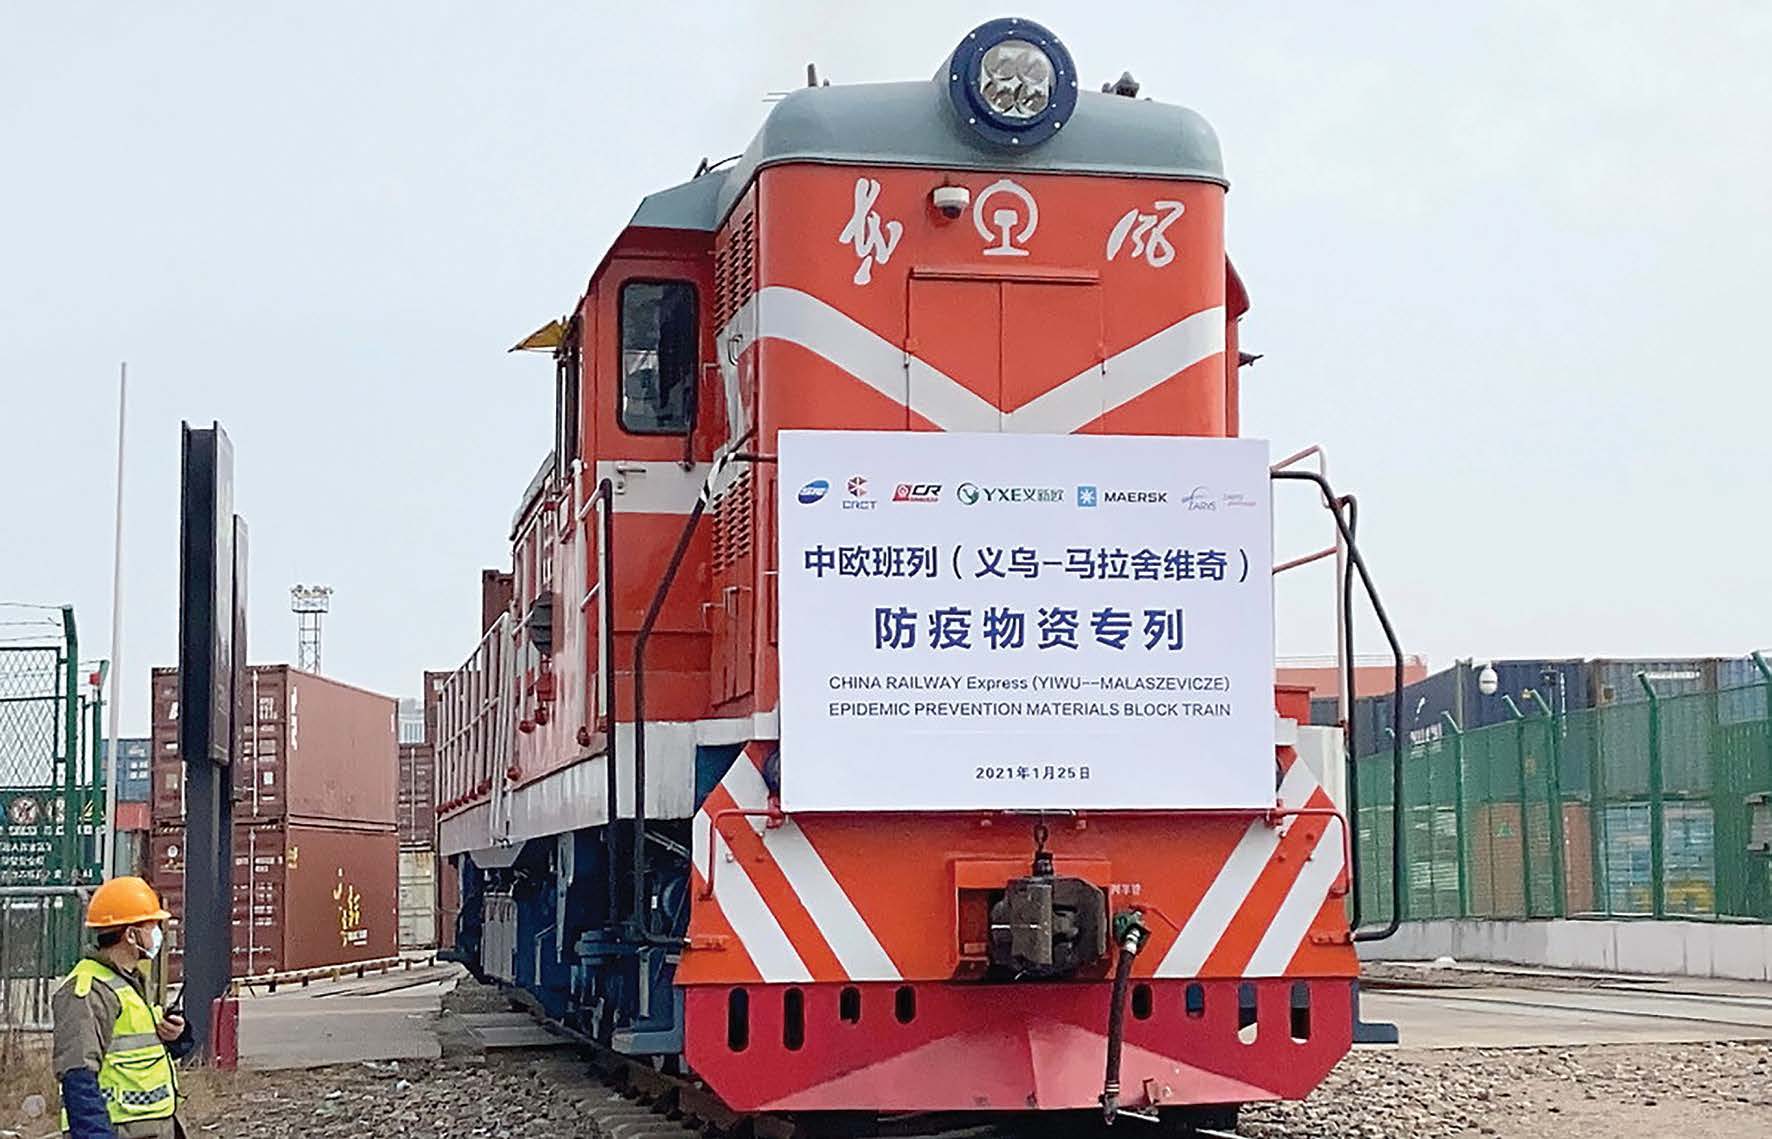 Salgınla mücadeleye yönelik malzemelerin yüklü olduğu Çin-Avrupa treni, Polonya'nın Malaszewicze kentine gitmek üzere Zhejiang eyaletindeki Yiwu'dan kalkıyor. (Gong Xianming / China Daily)